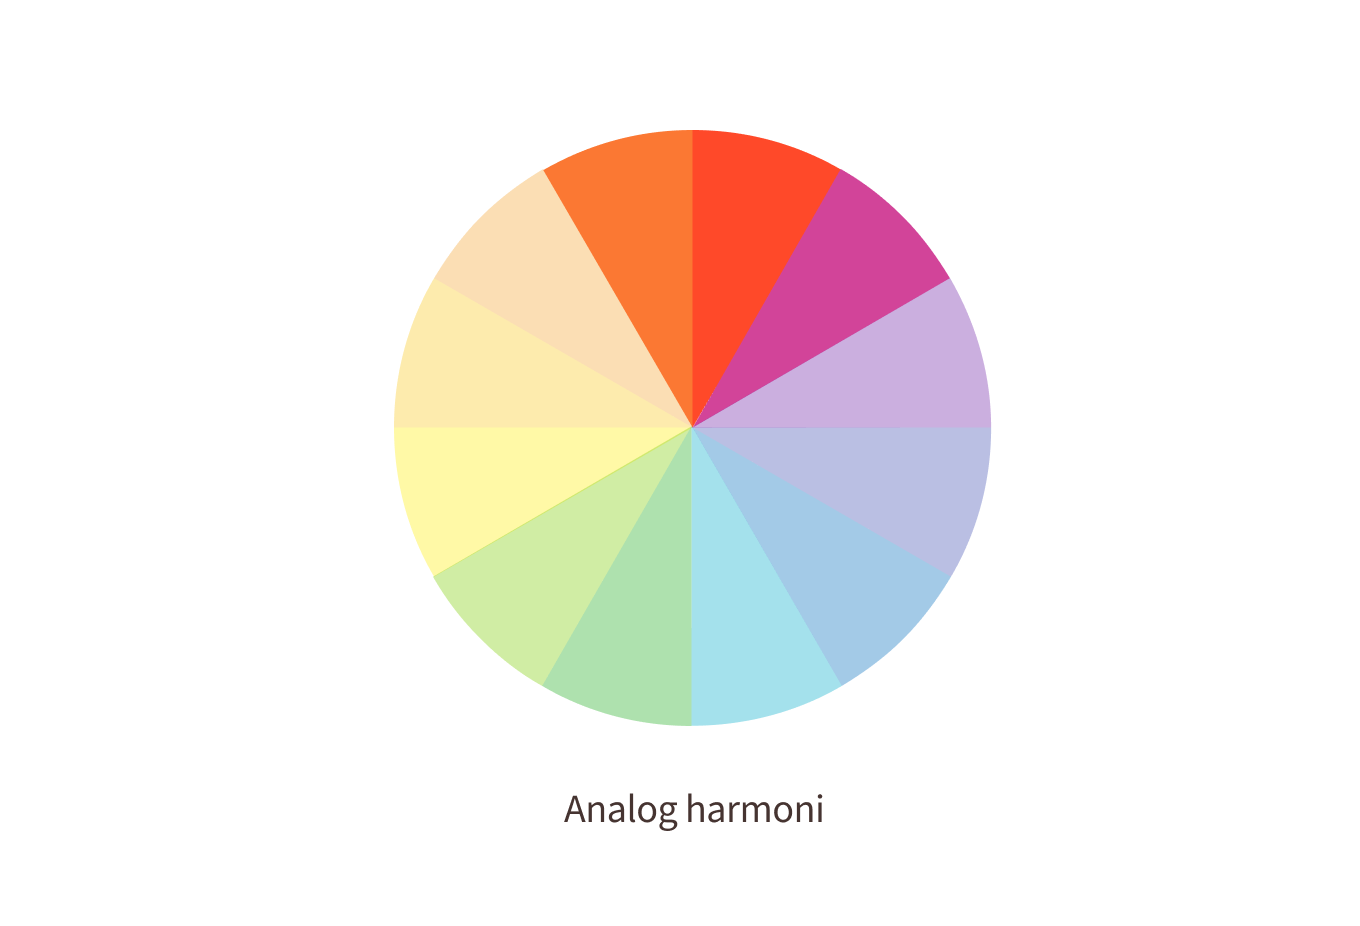 Fargesirkel med analog harmoni uthevet